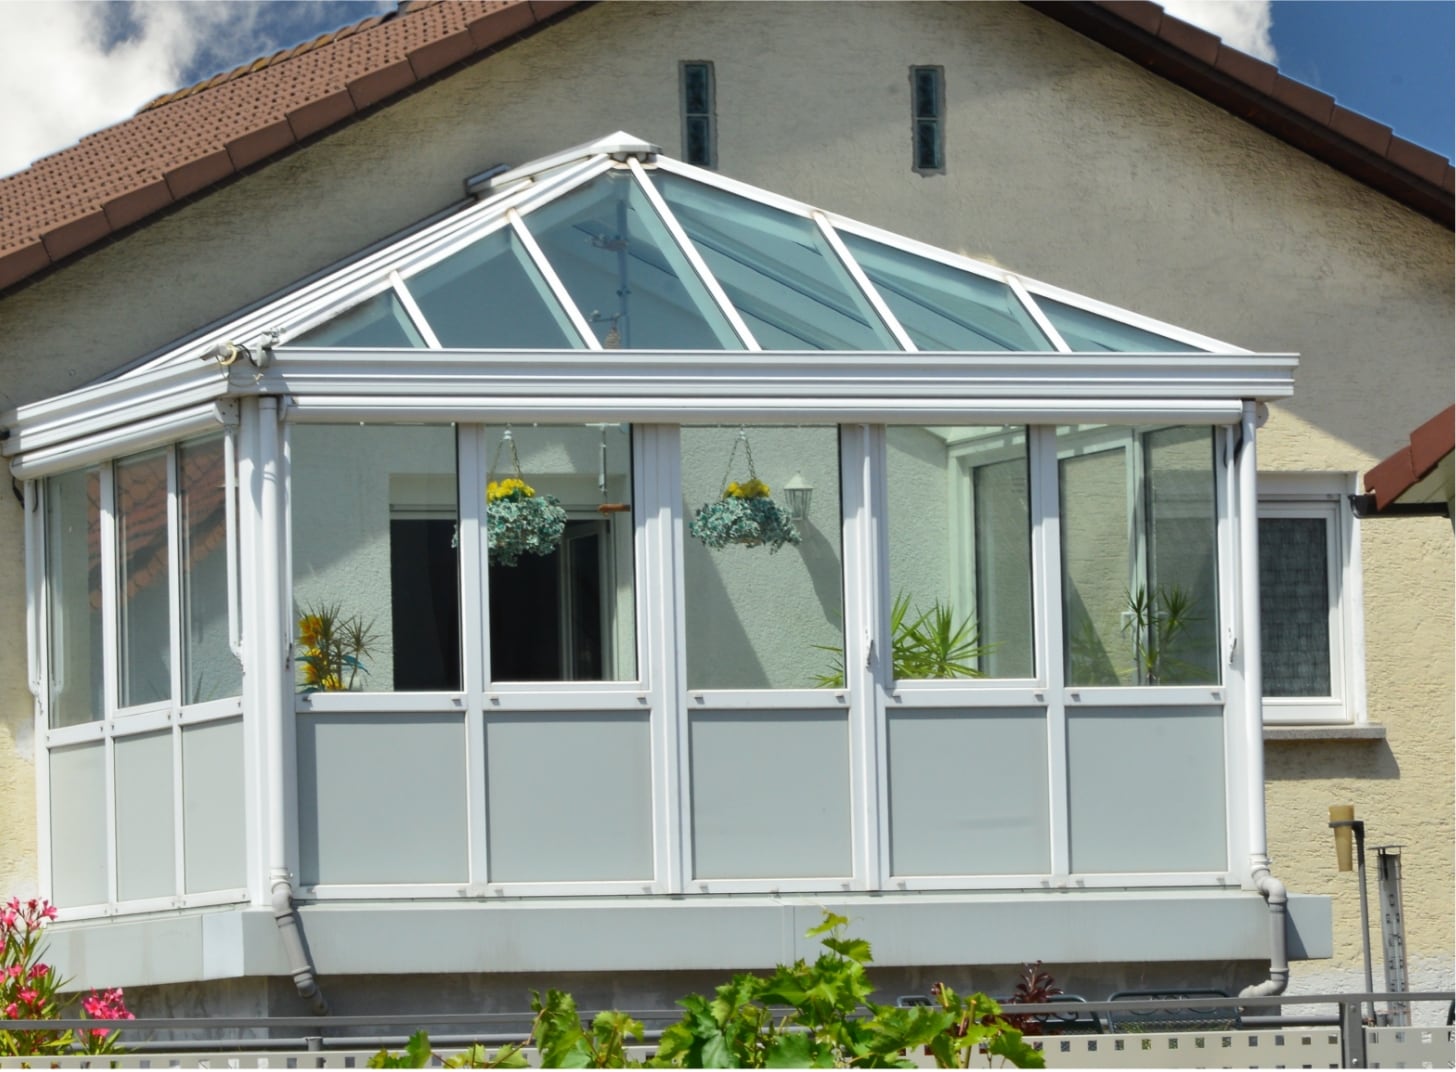 Vergrößert den Wohnraum und verringert die Energiekosten: Die Balkon-Verglasung